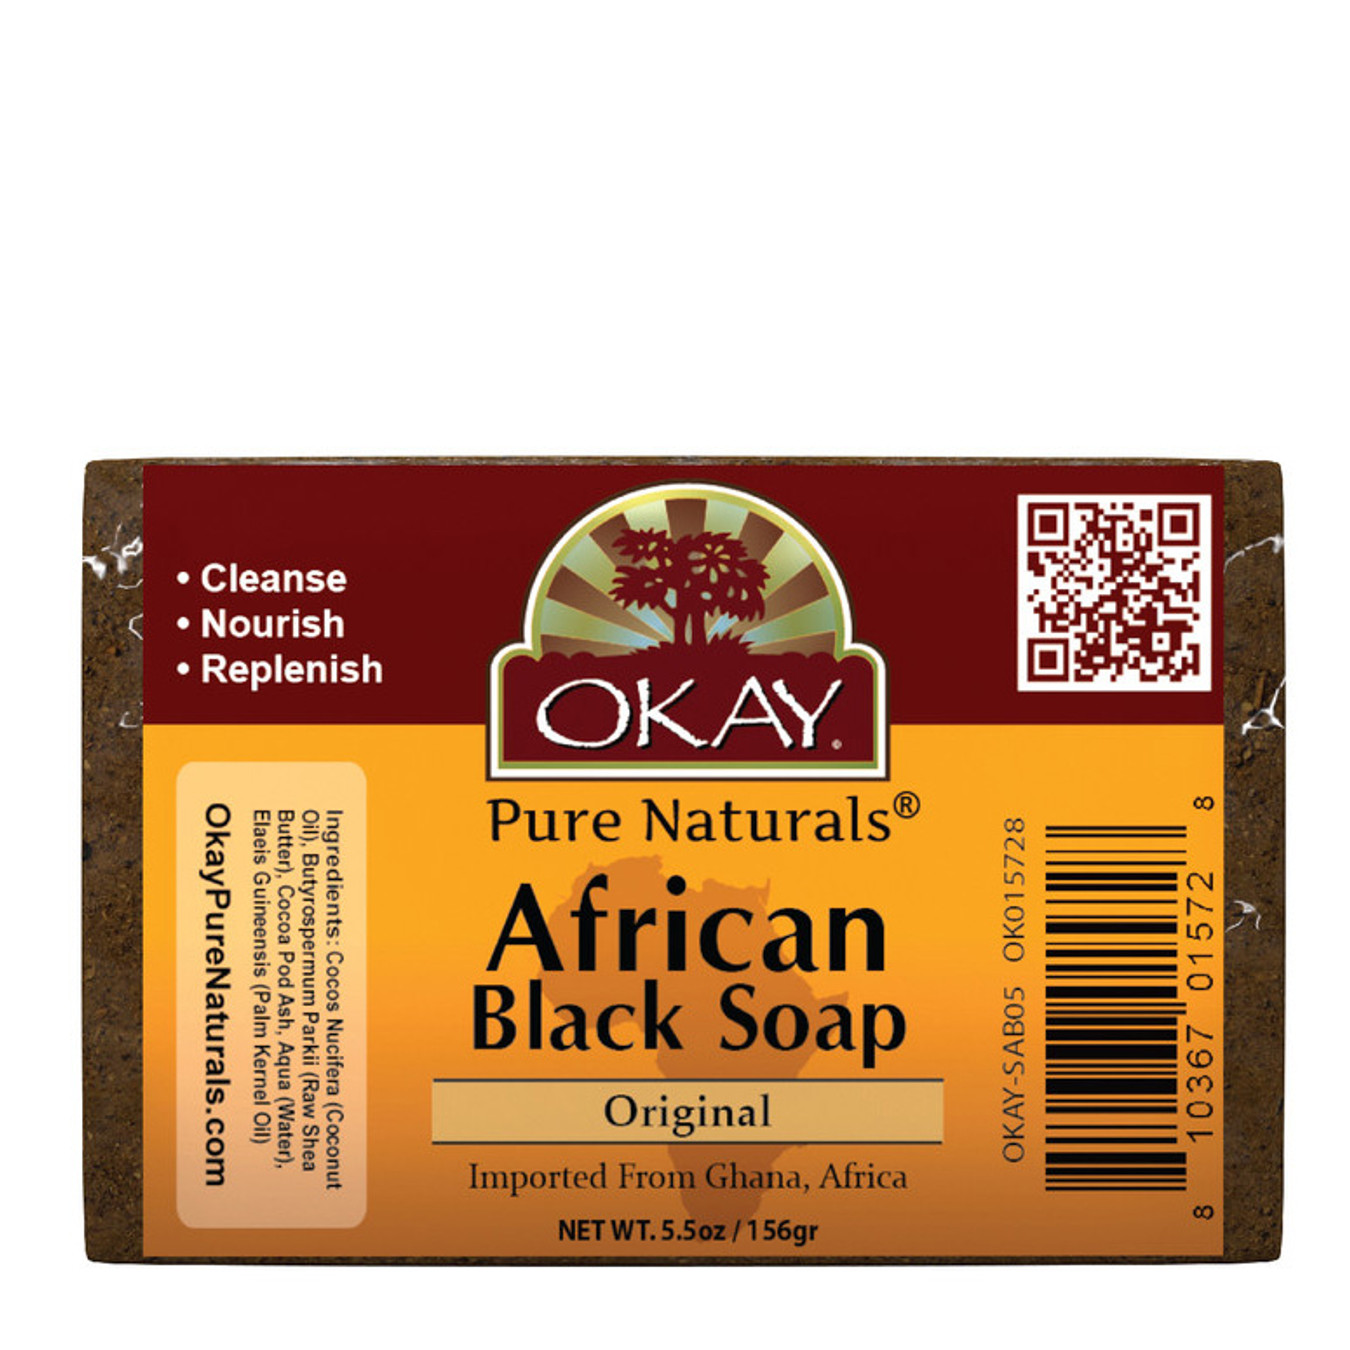 OKAY African Black Soap Original